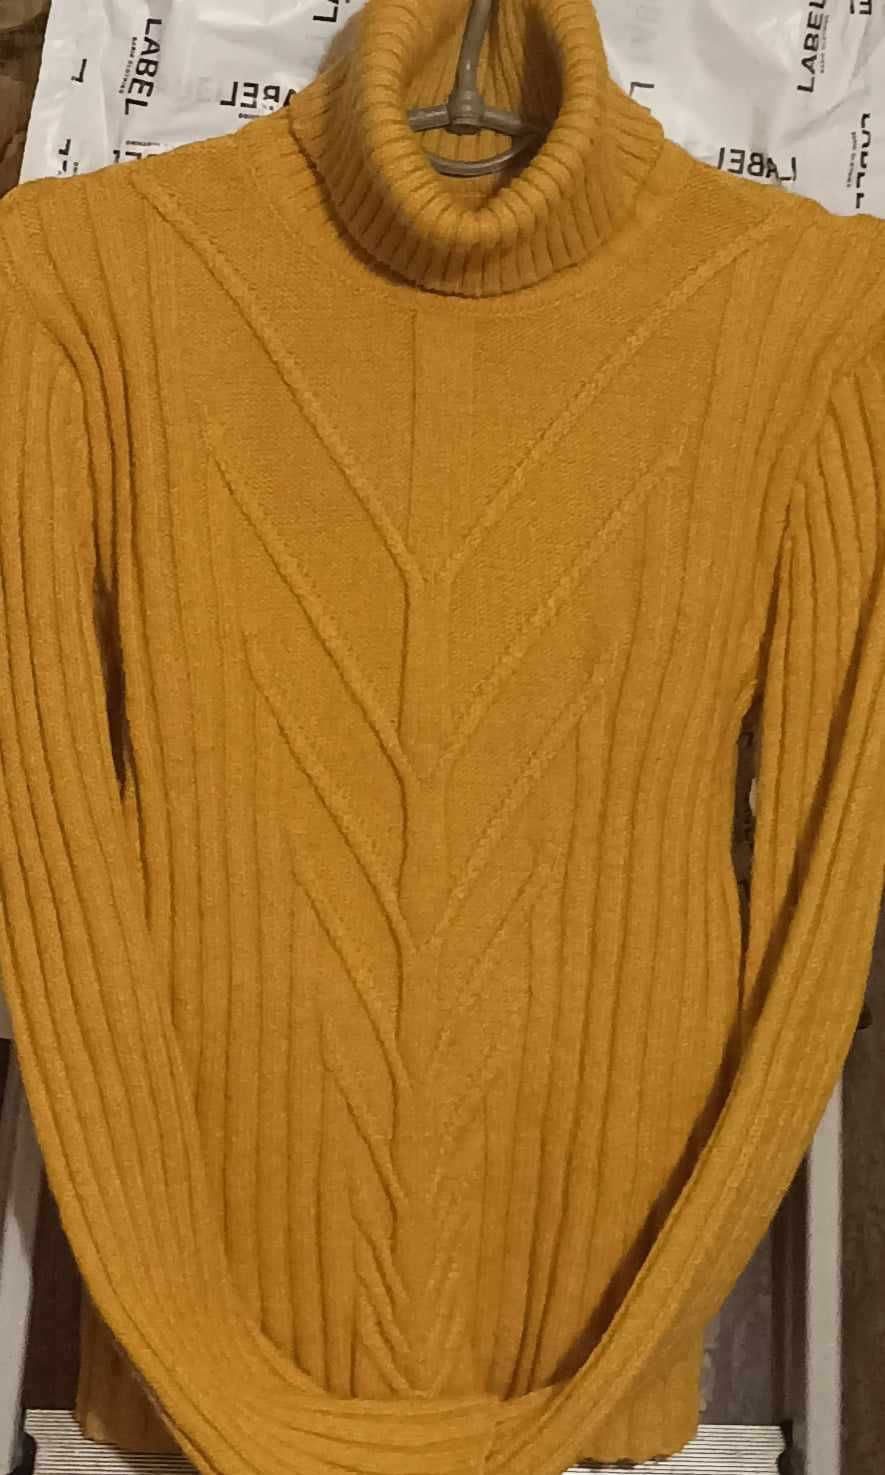 Кардиган,свитер,кофта,блузка все жен.на 48разм.Цена за все вместе 11шт